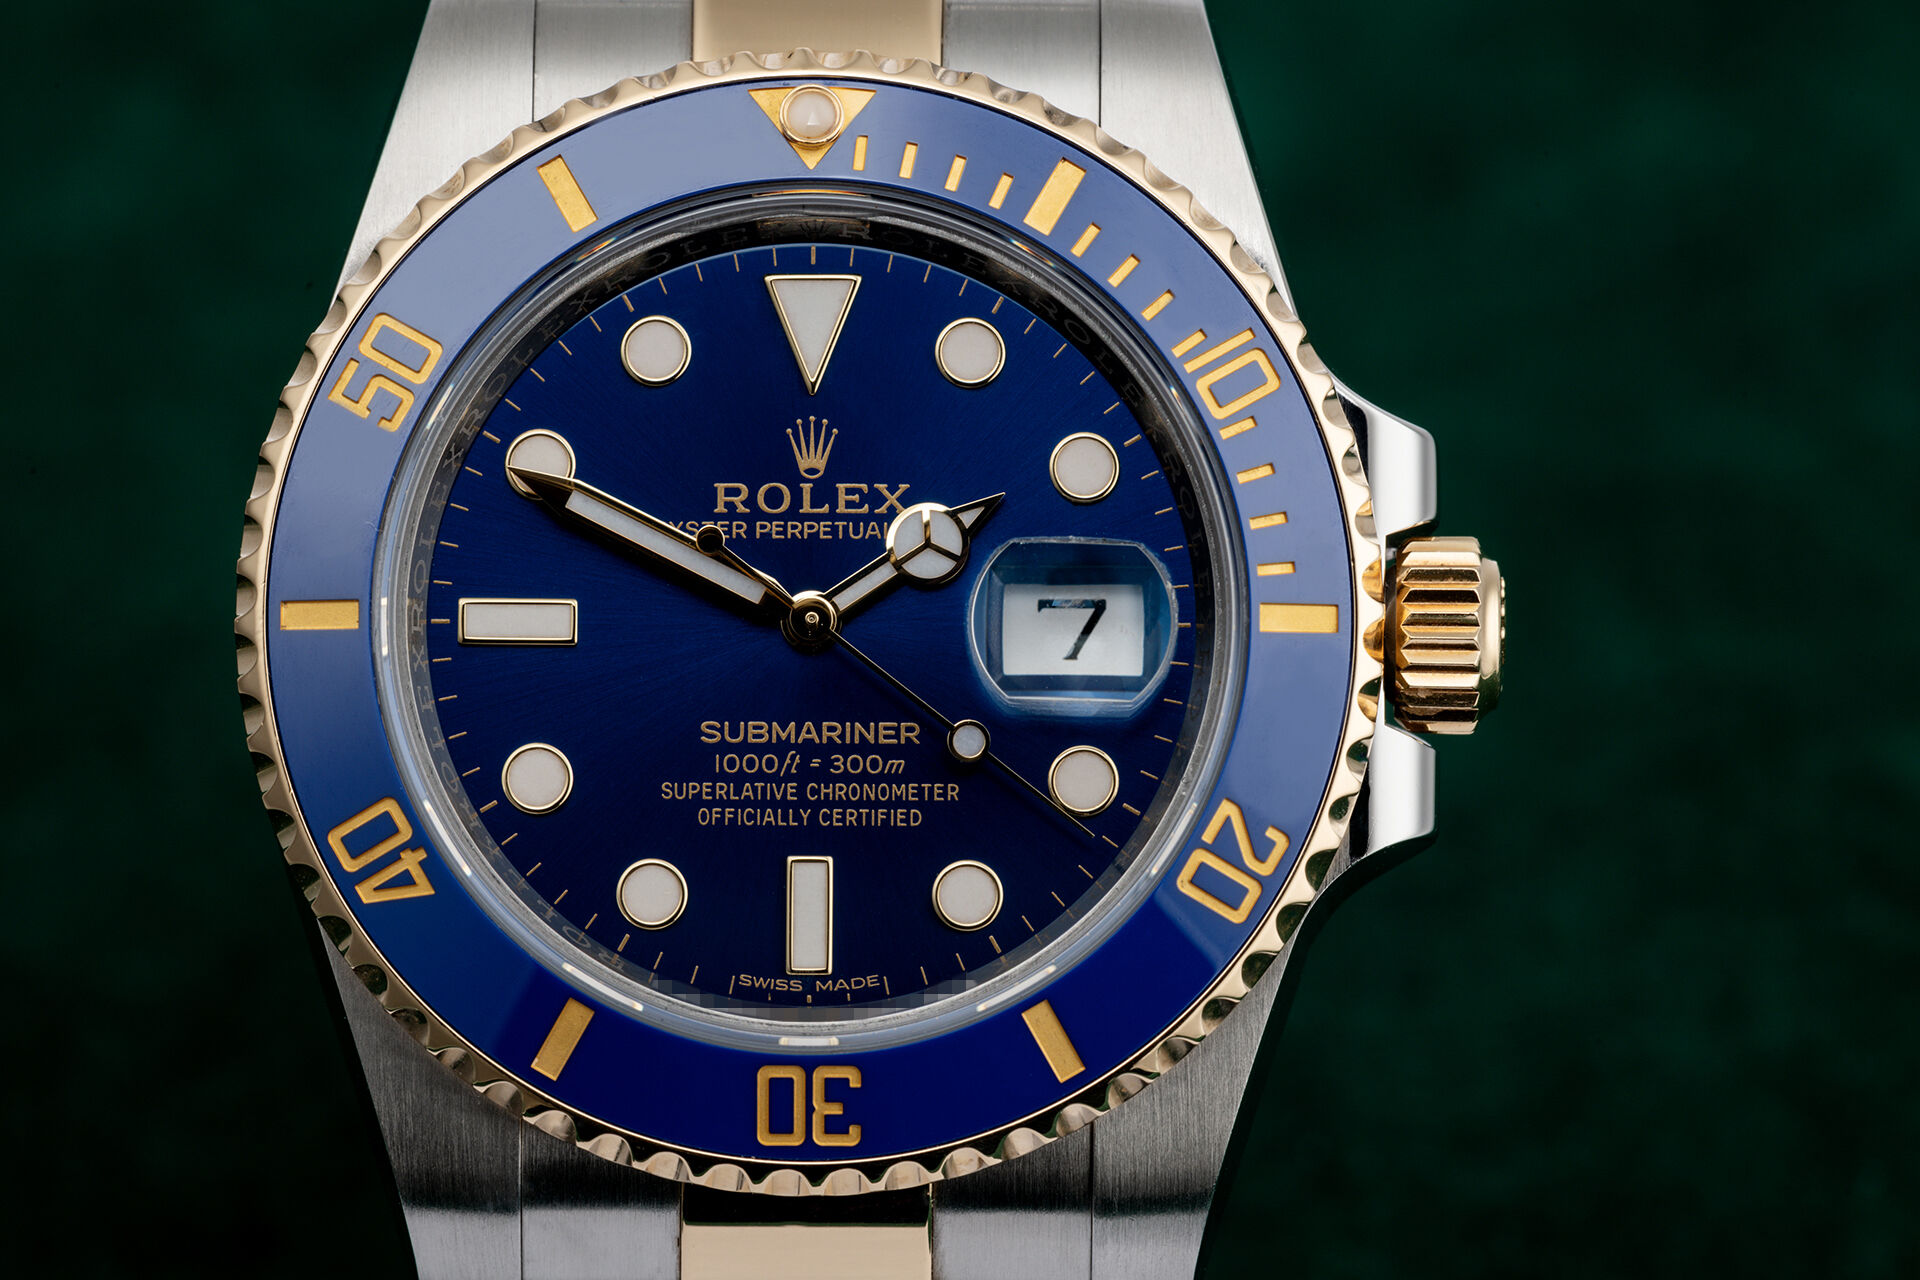 ref 116613LB | Rolex Warranty to 2023 | Rolex Submariner Date